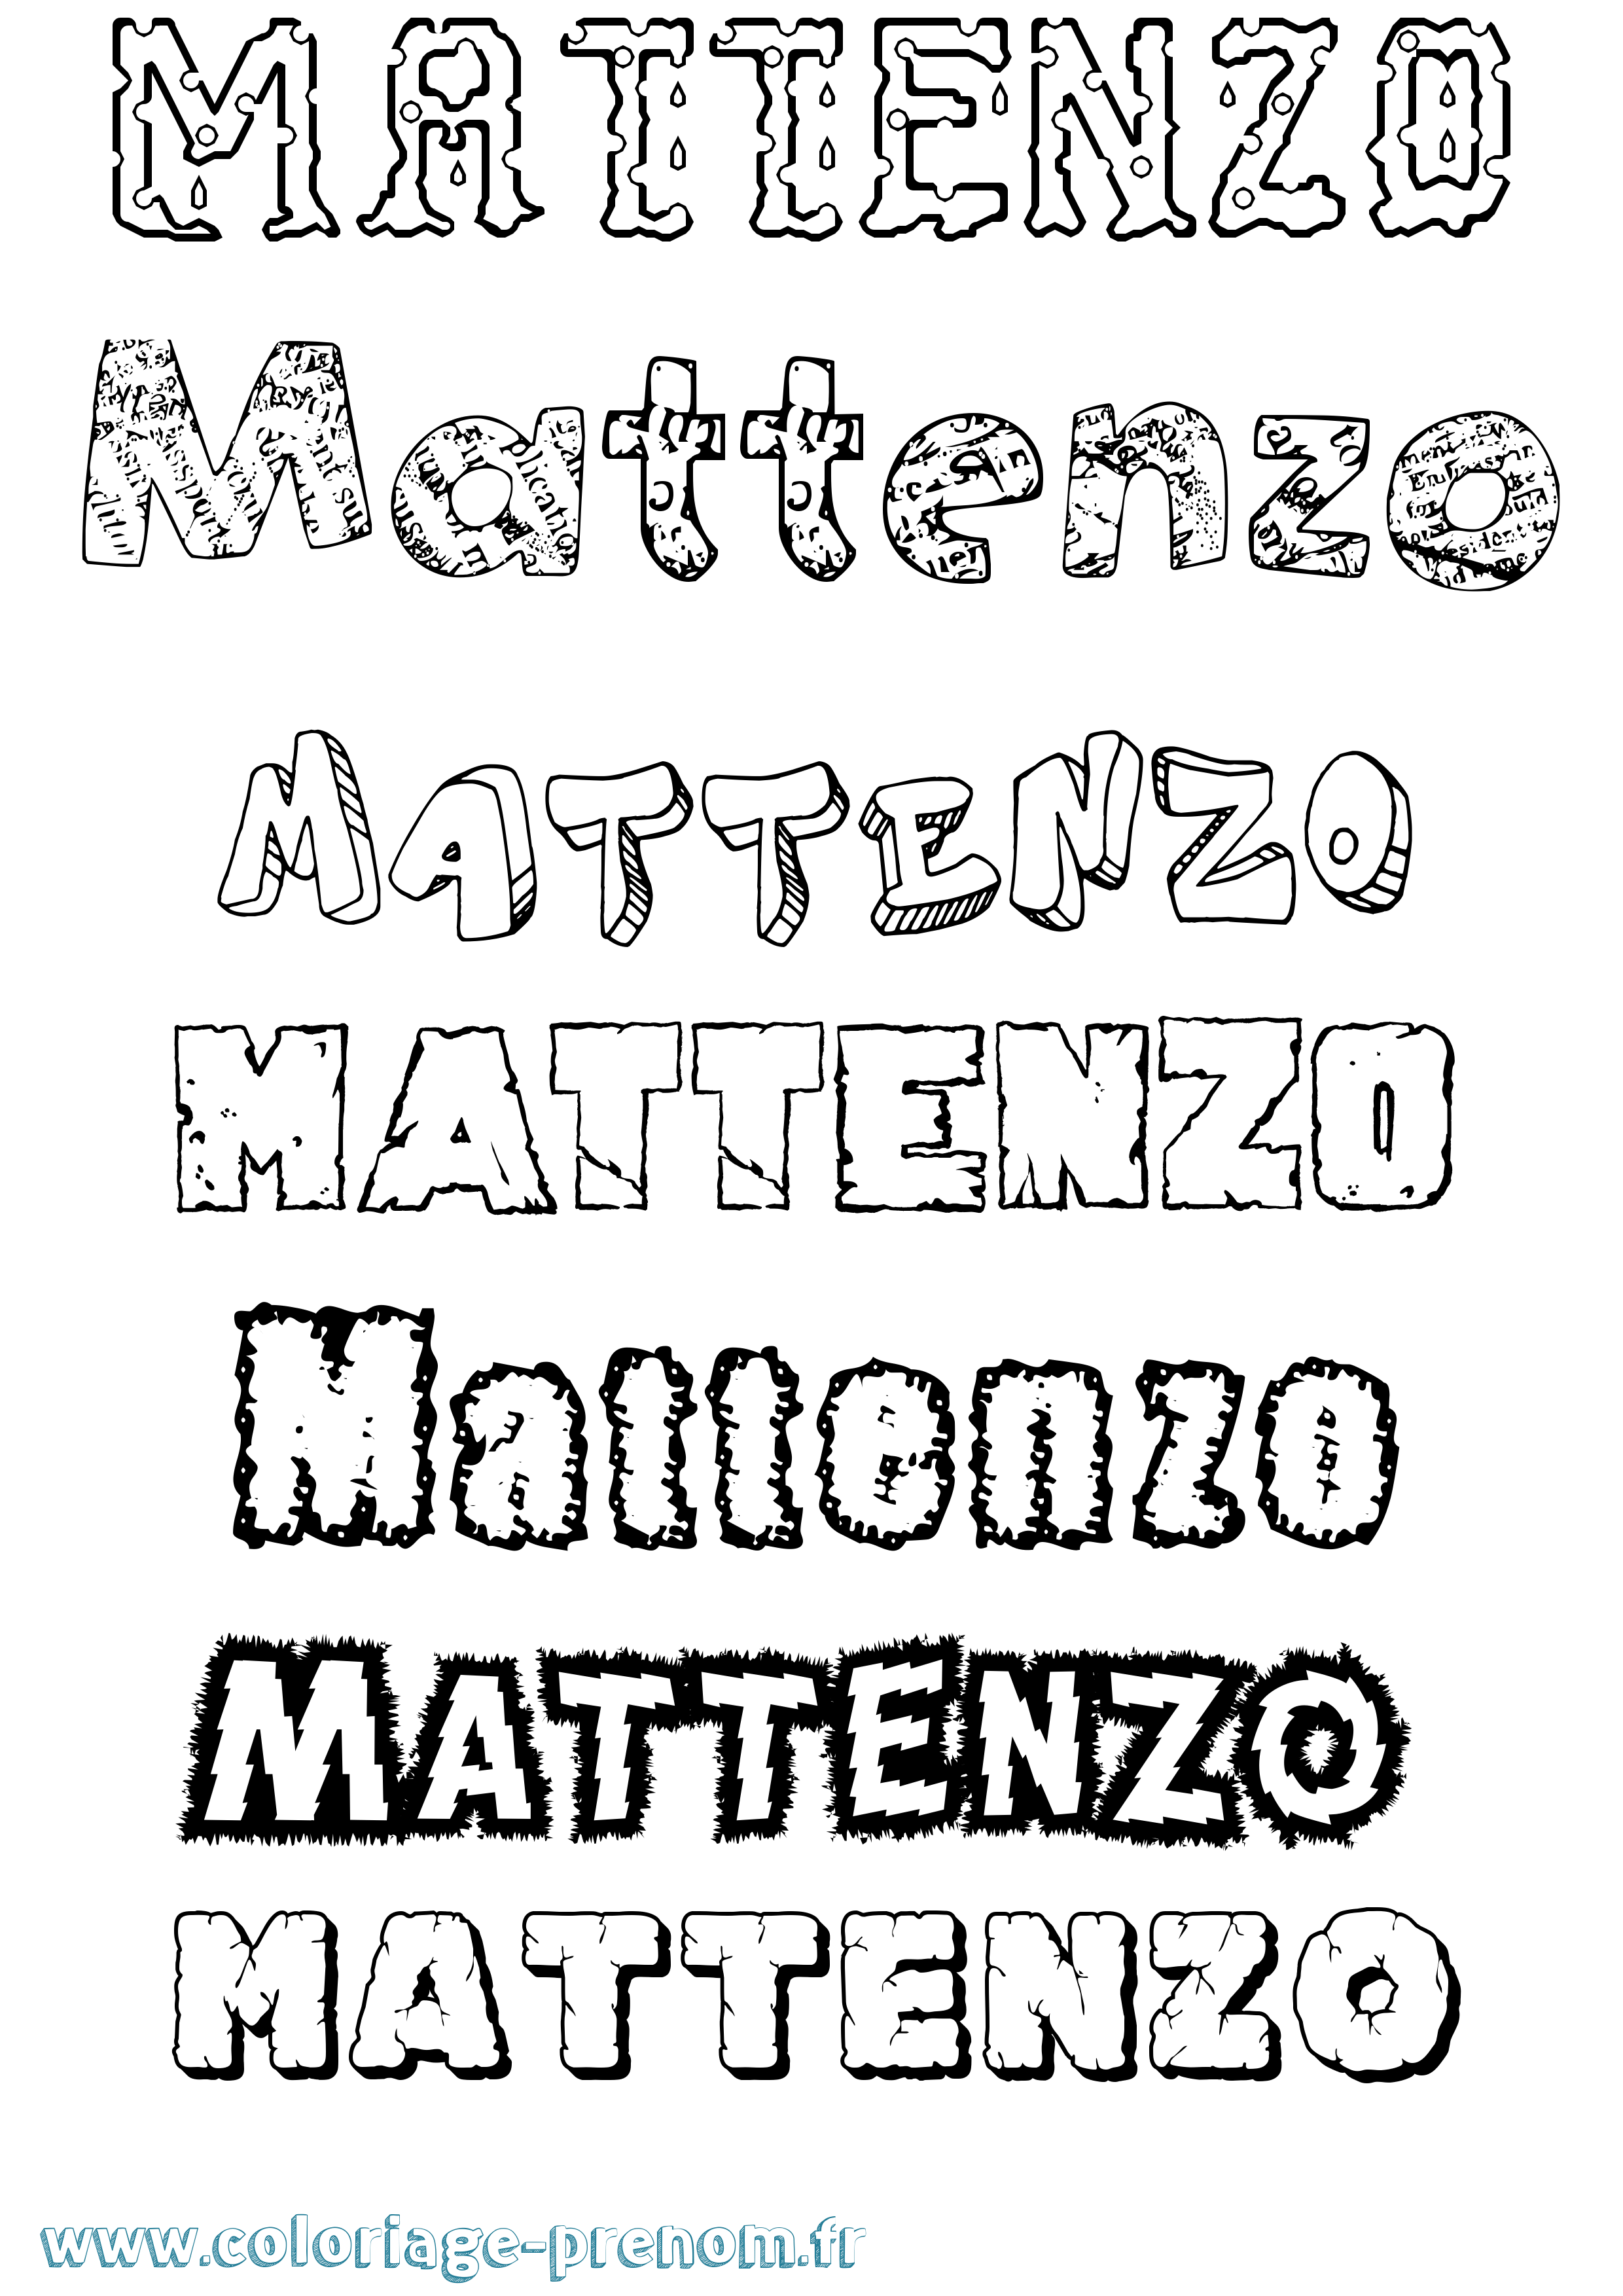 Coloriage prénom Mattenzo Destructuré